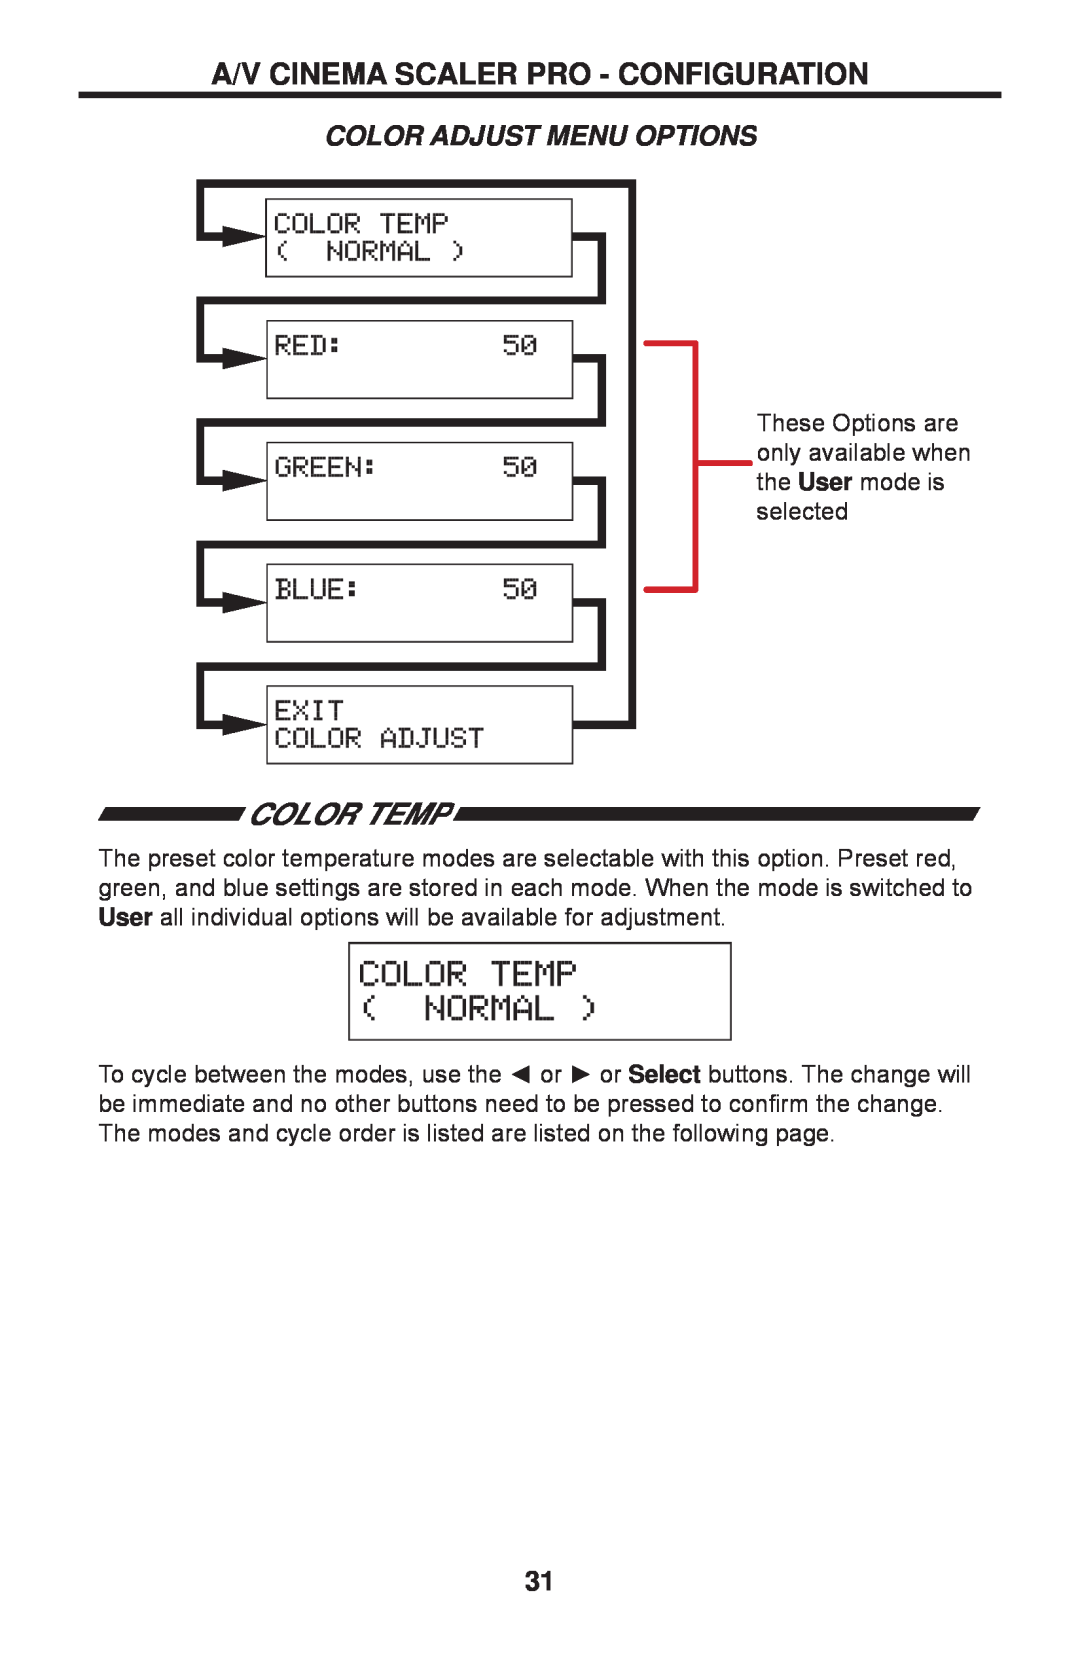 Gefen PRO I user manual Color Temp, Color Adjust Menu Options, A/V Cinema Scaler Pro - Configuration 